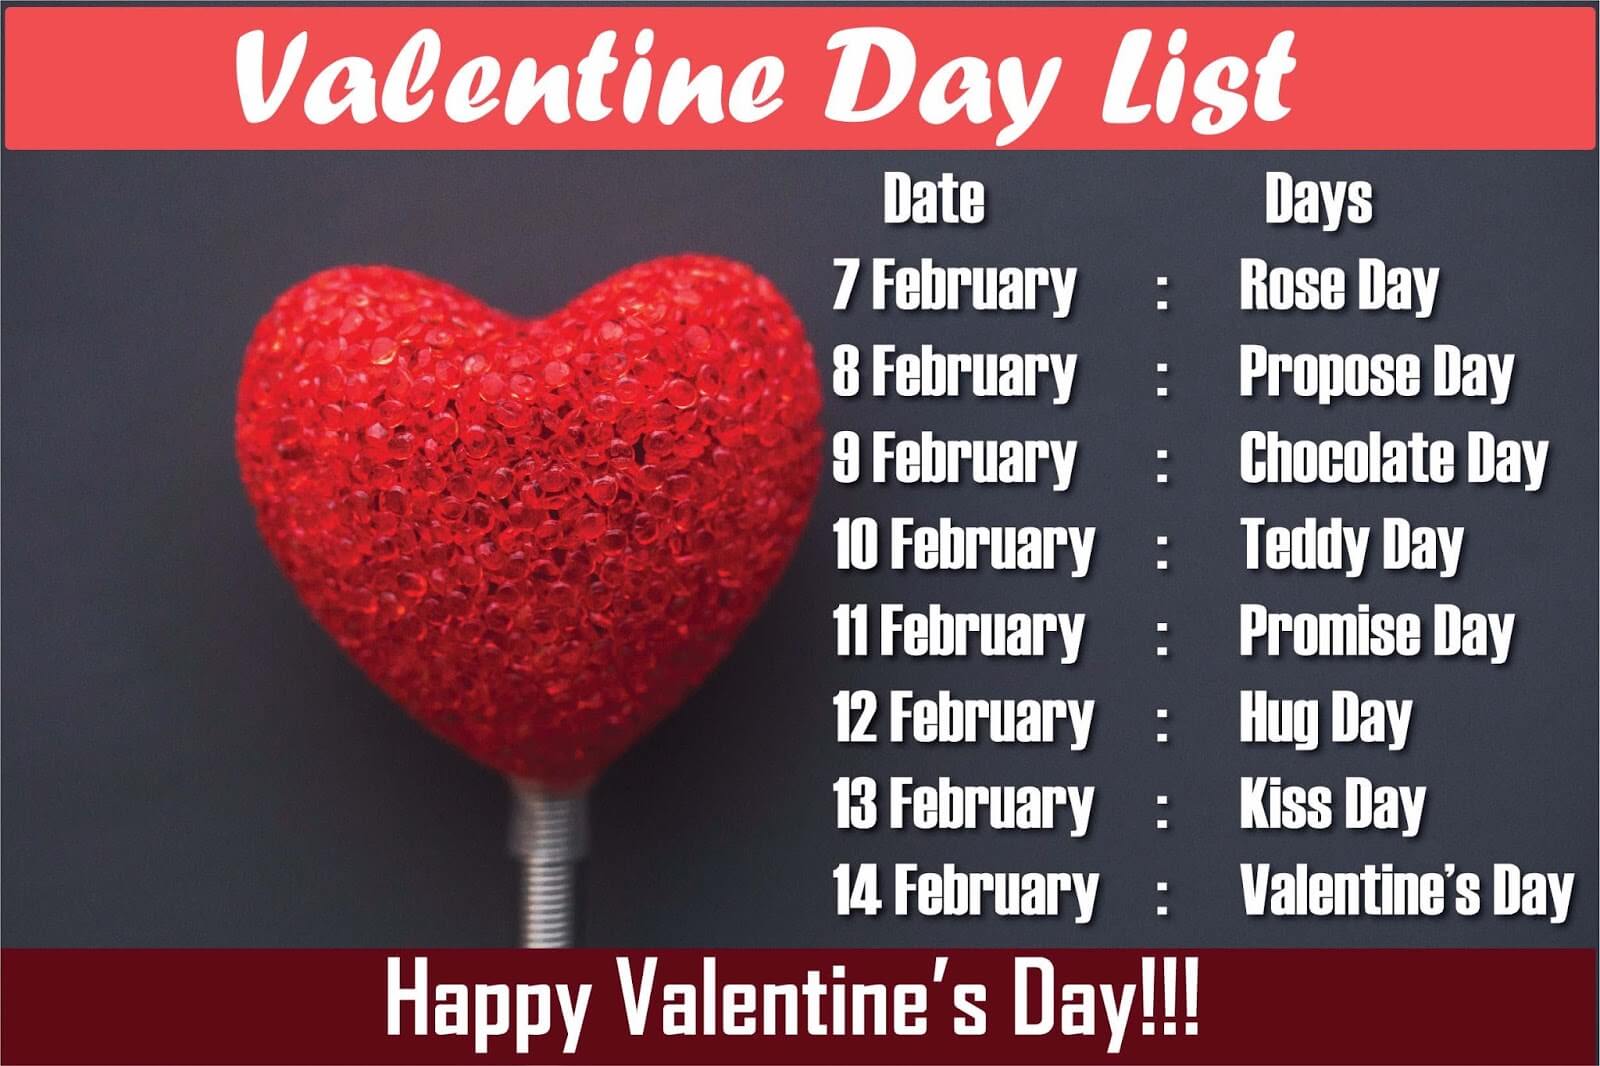 वैलेंटाइन्स डे वीक लिस्ट | Valentine's Day Week List 2019